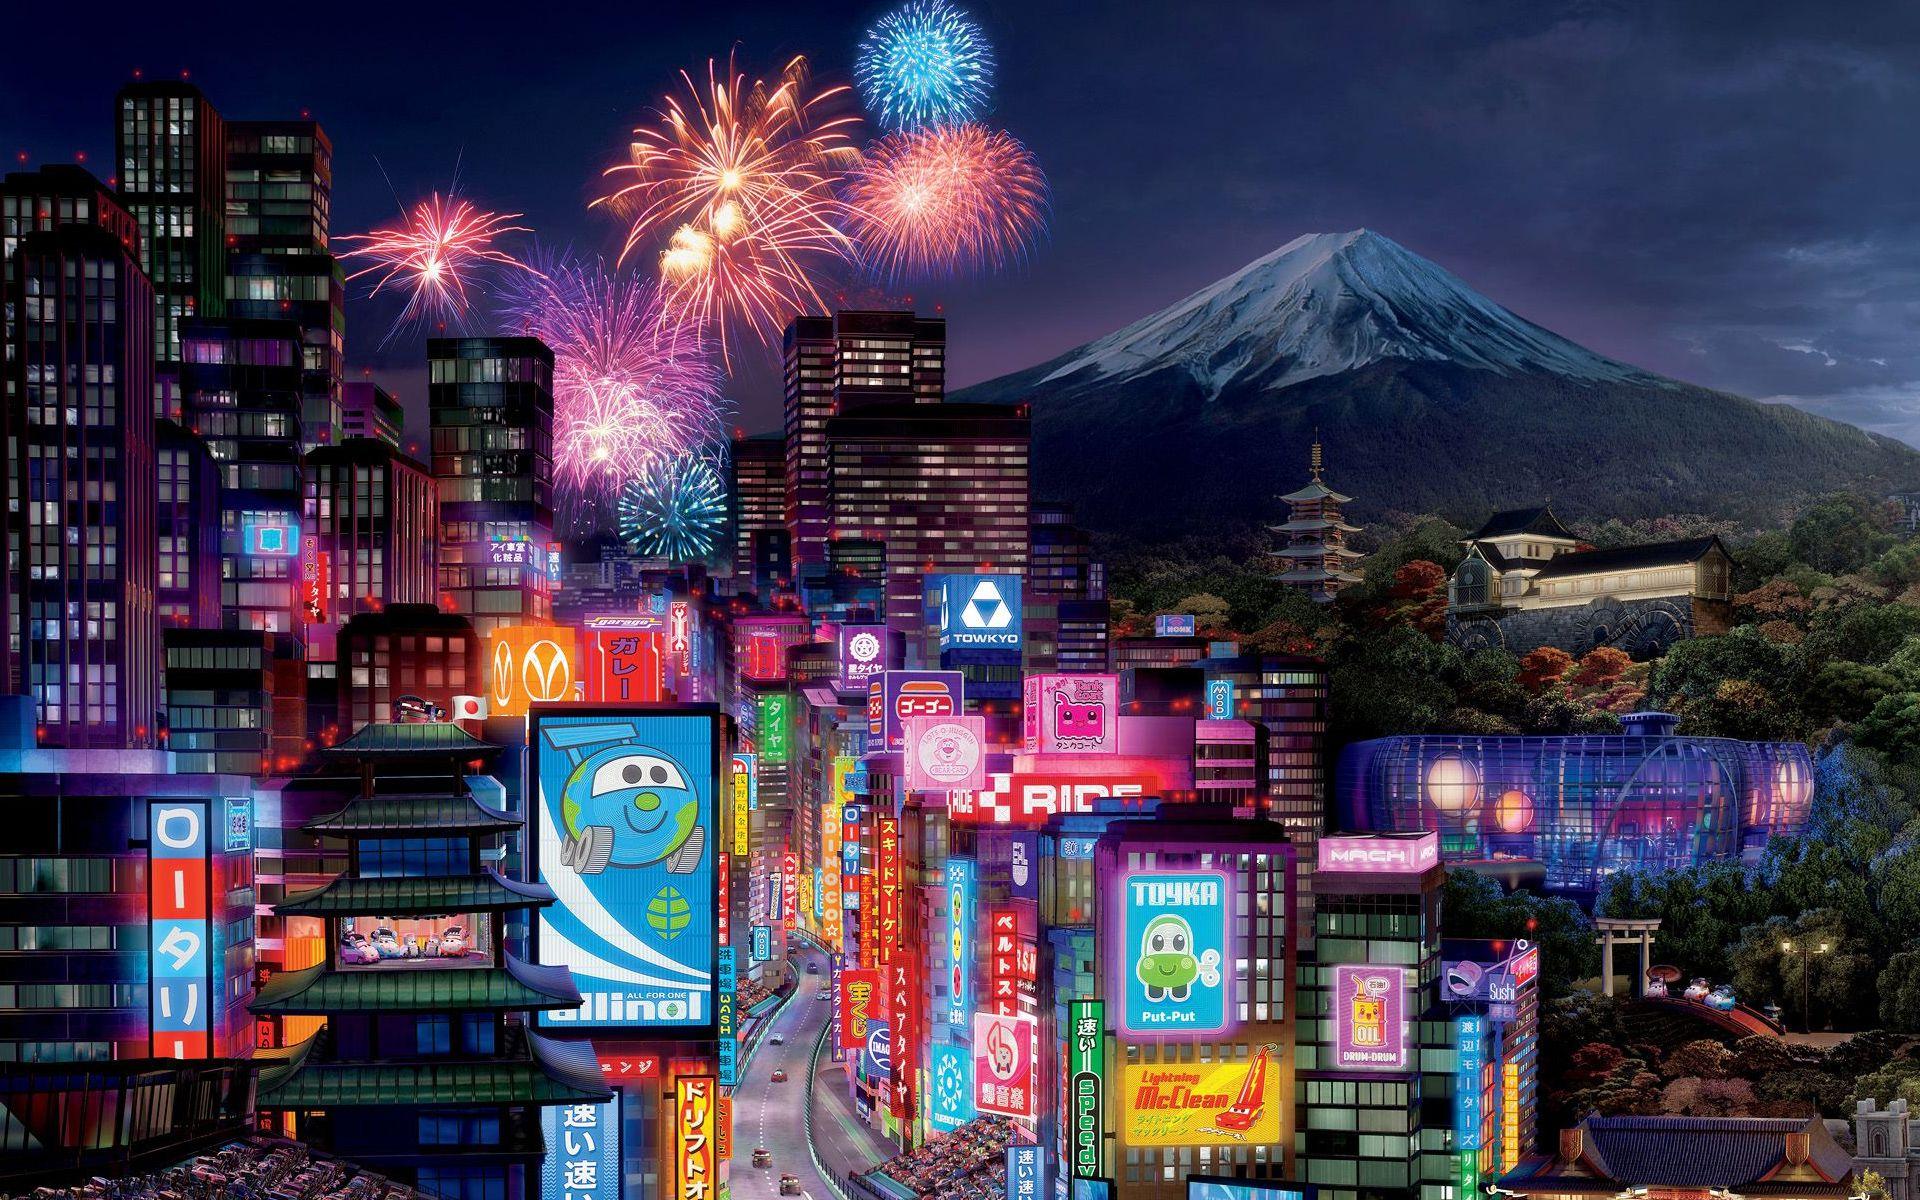 4K Anime Tokyo wallpapers sẽ khiến bạn cảm thấy như đang sống trong một bộ phim hoạt hình hay nhất! Chất lượng hình ảnh tuyệt đẹp sẽ khiến bạn chú ý và không thể rời mắt khỏi màn hình.